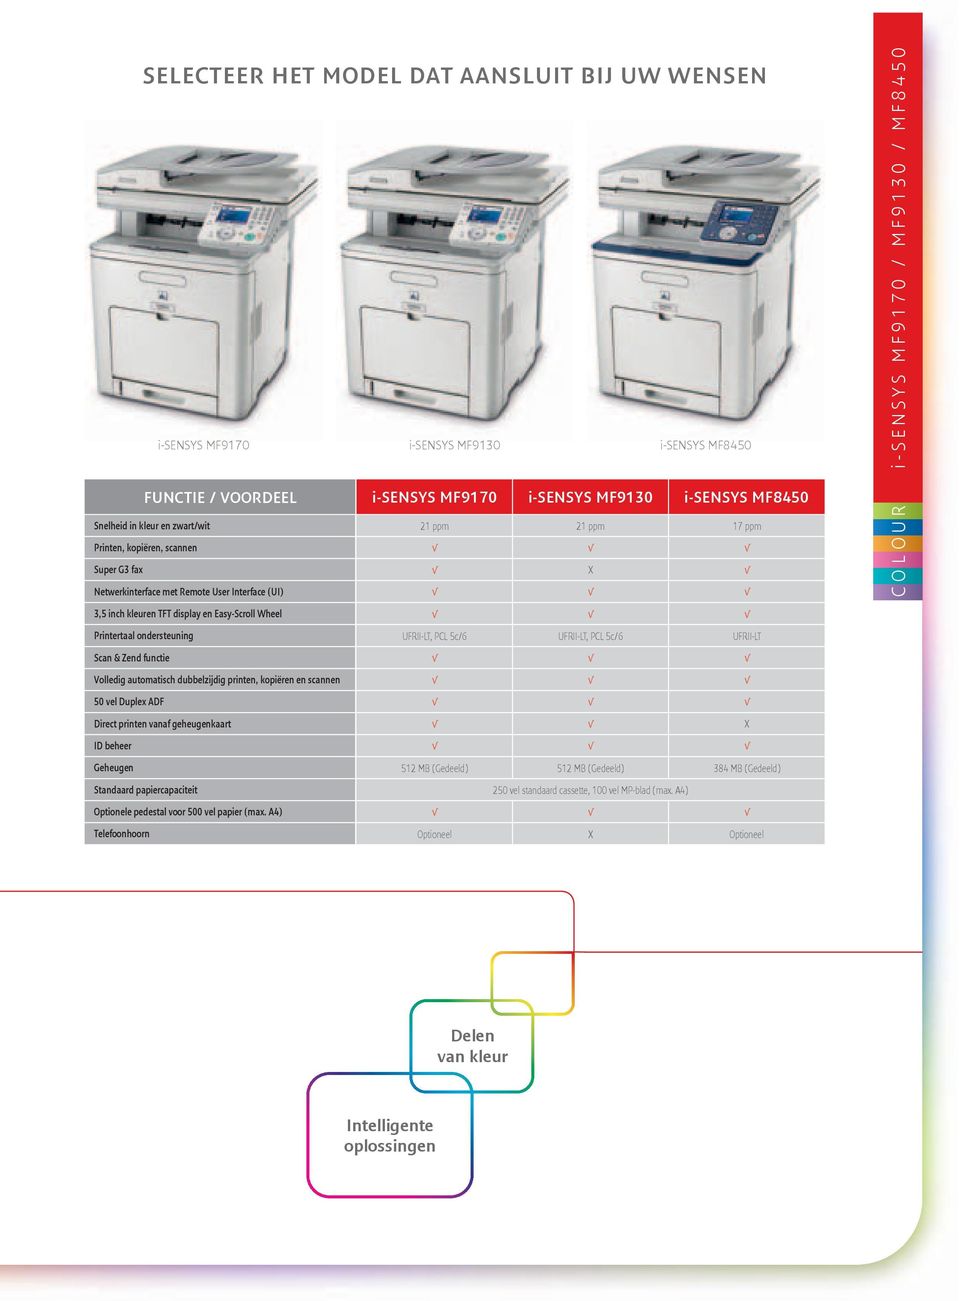 printen, kopiëren en scannen 50 vel Duplex ADF Direct printen vanaf geheugenkaart ID beheer Geheugen Standaard papiercapaciteit Optionele pedestal voor 500 vel papier (max.